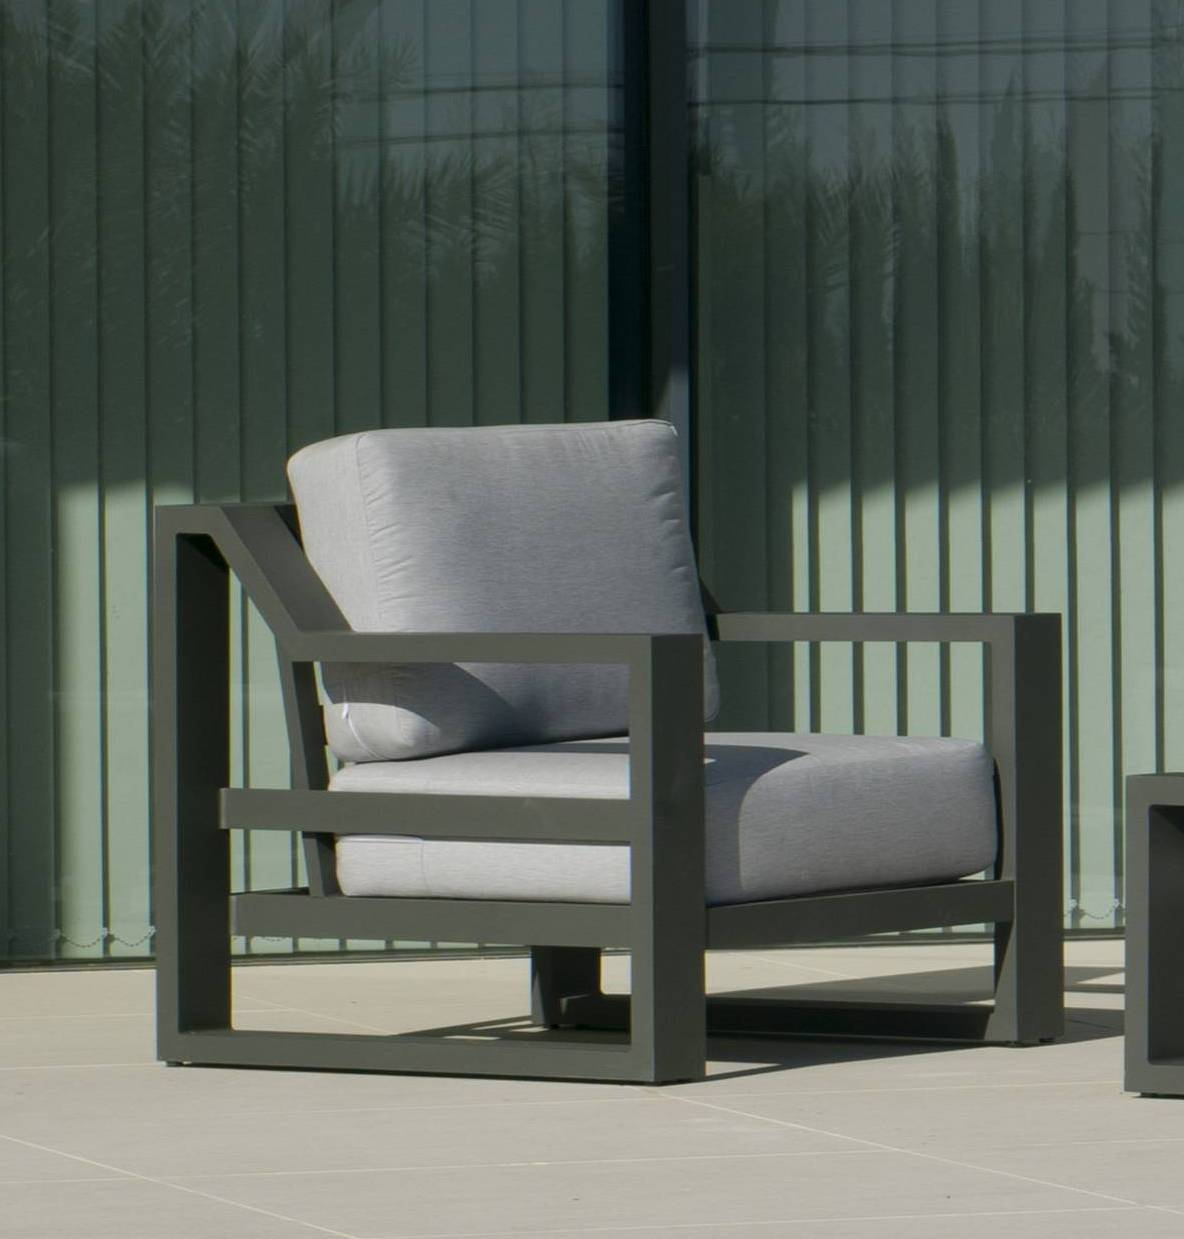 Sillón Aluminio Luxe Rosenborg-1 - Sillón lujo con cojines gran confort desenfundables. Estructura de alumino reforzado color blanco, antracita, champagne, plata o marrón.